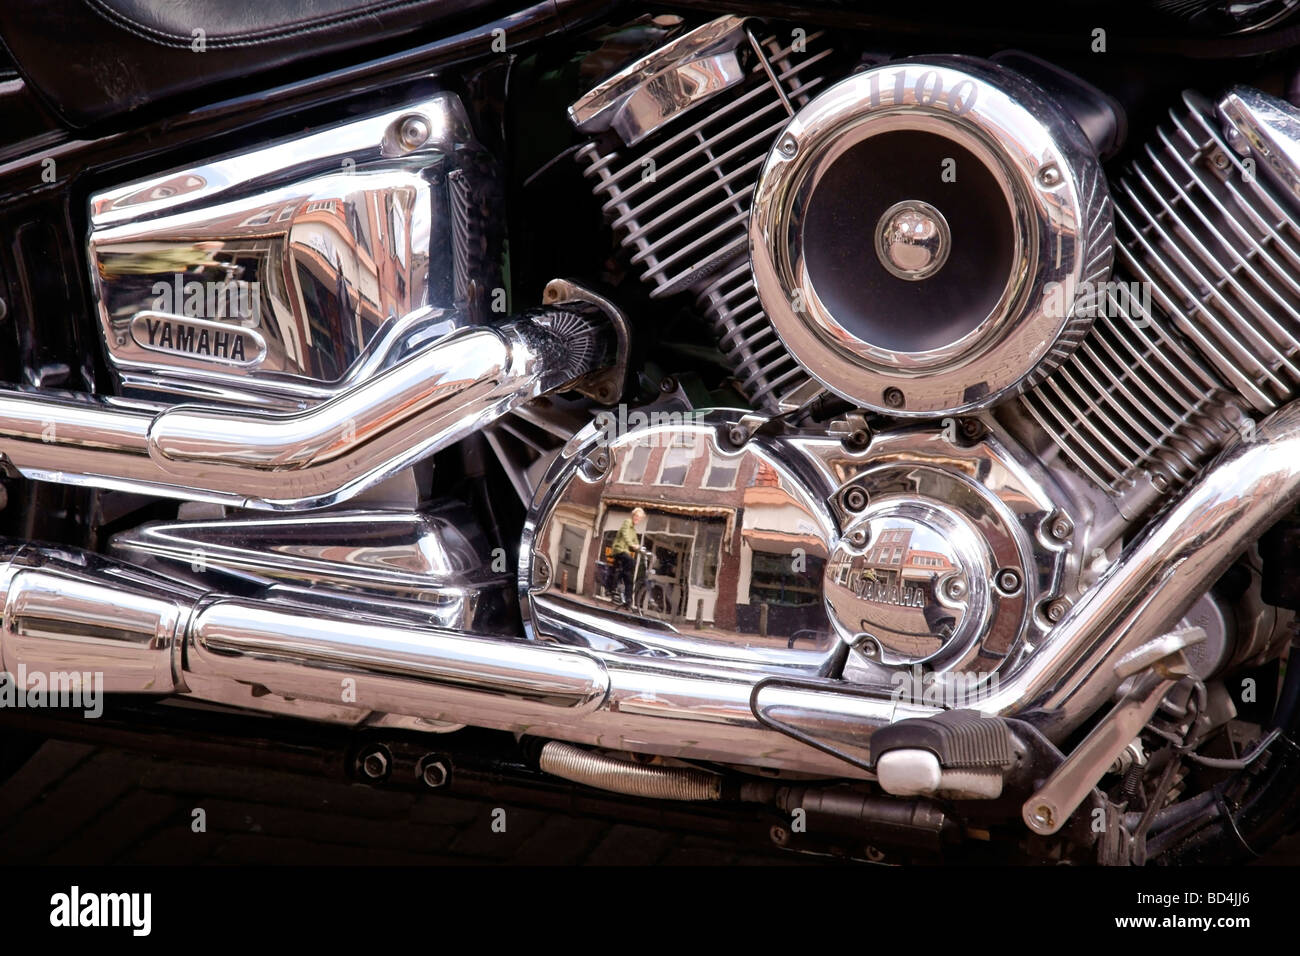 Détails de Chrome moto Yamaha avec cameo réflexions d'un cycliste de passage Banque D'Images